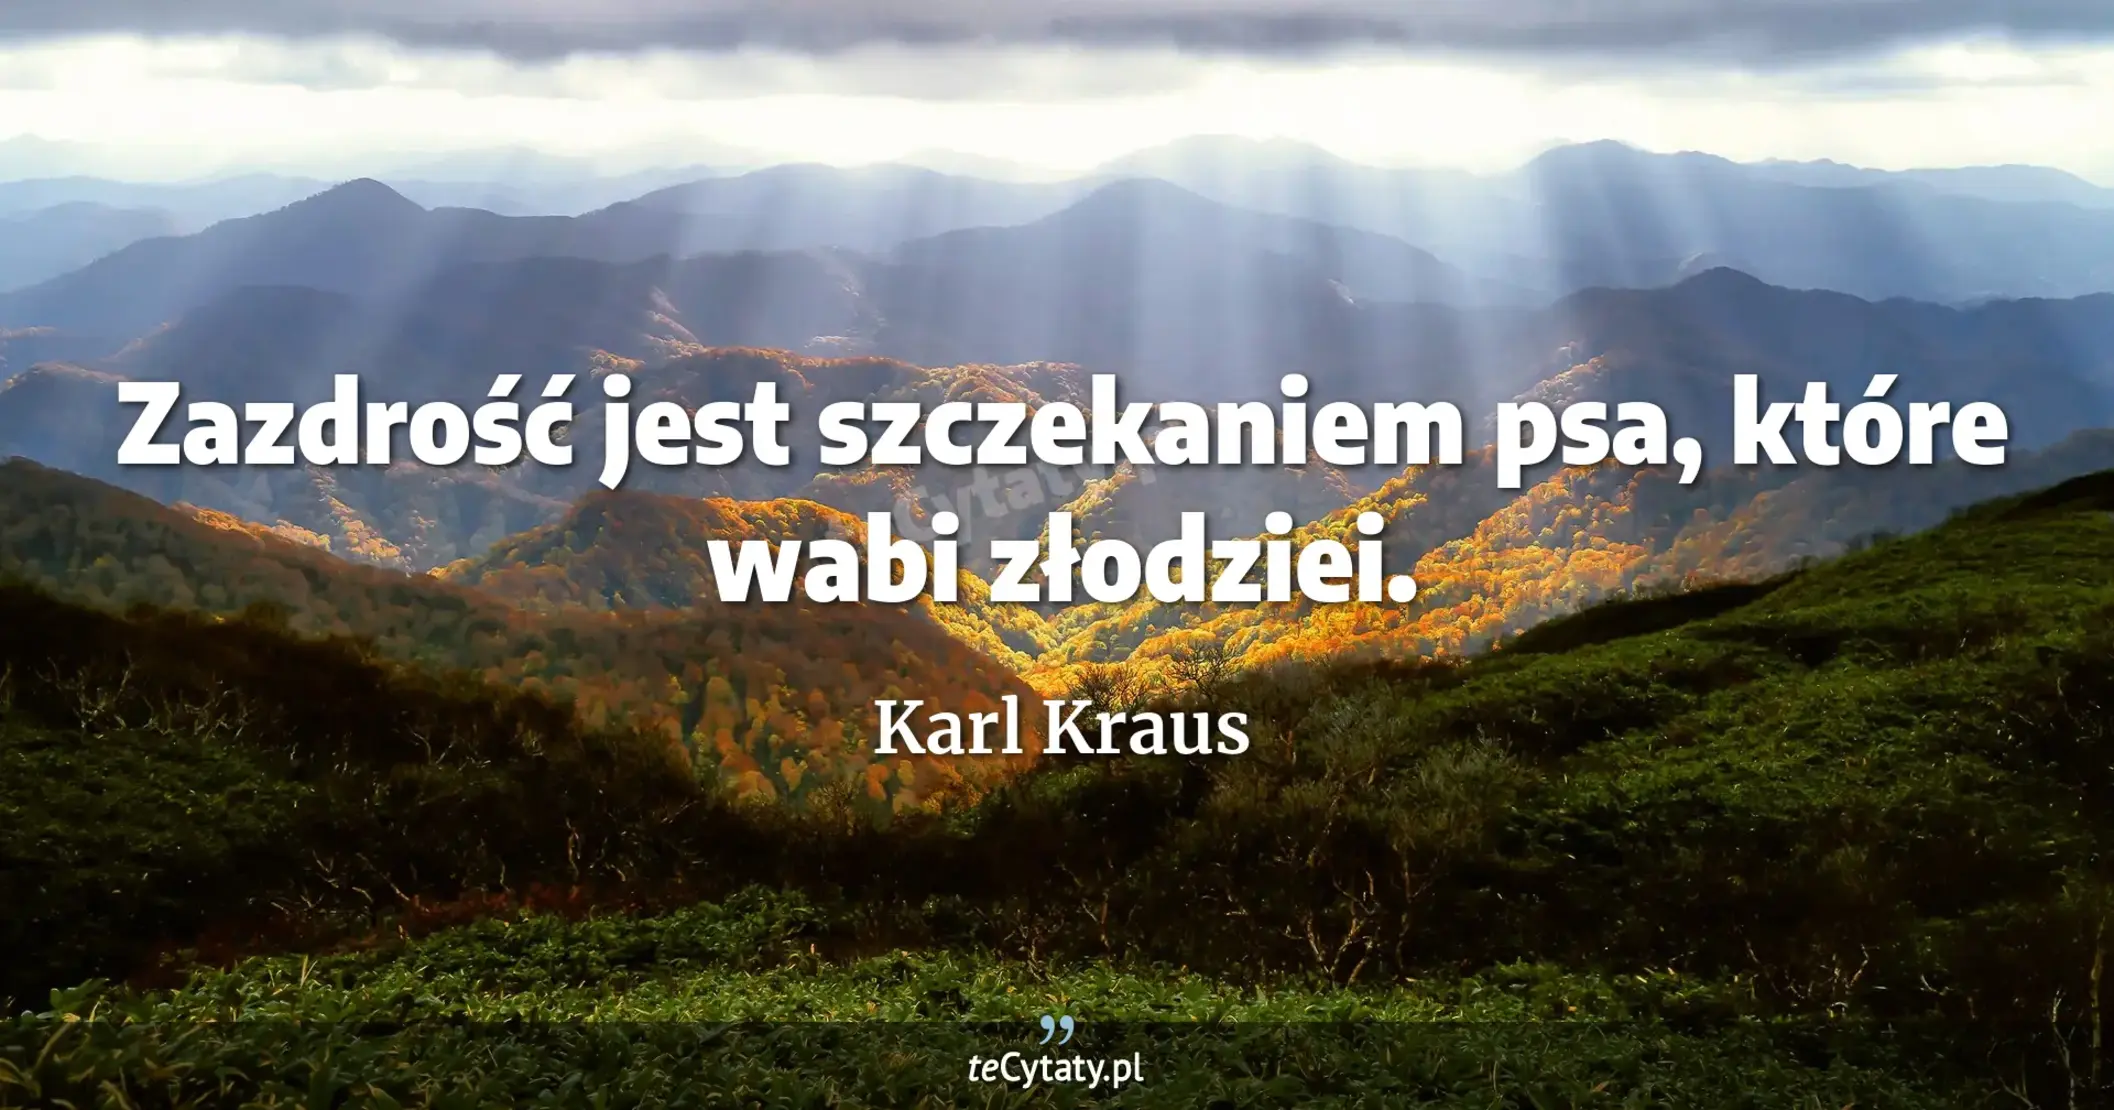 Zazdrość jest szczekaniem psa, które wabi złodziei. - Karl Kraus